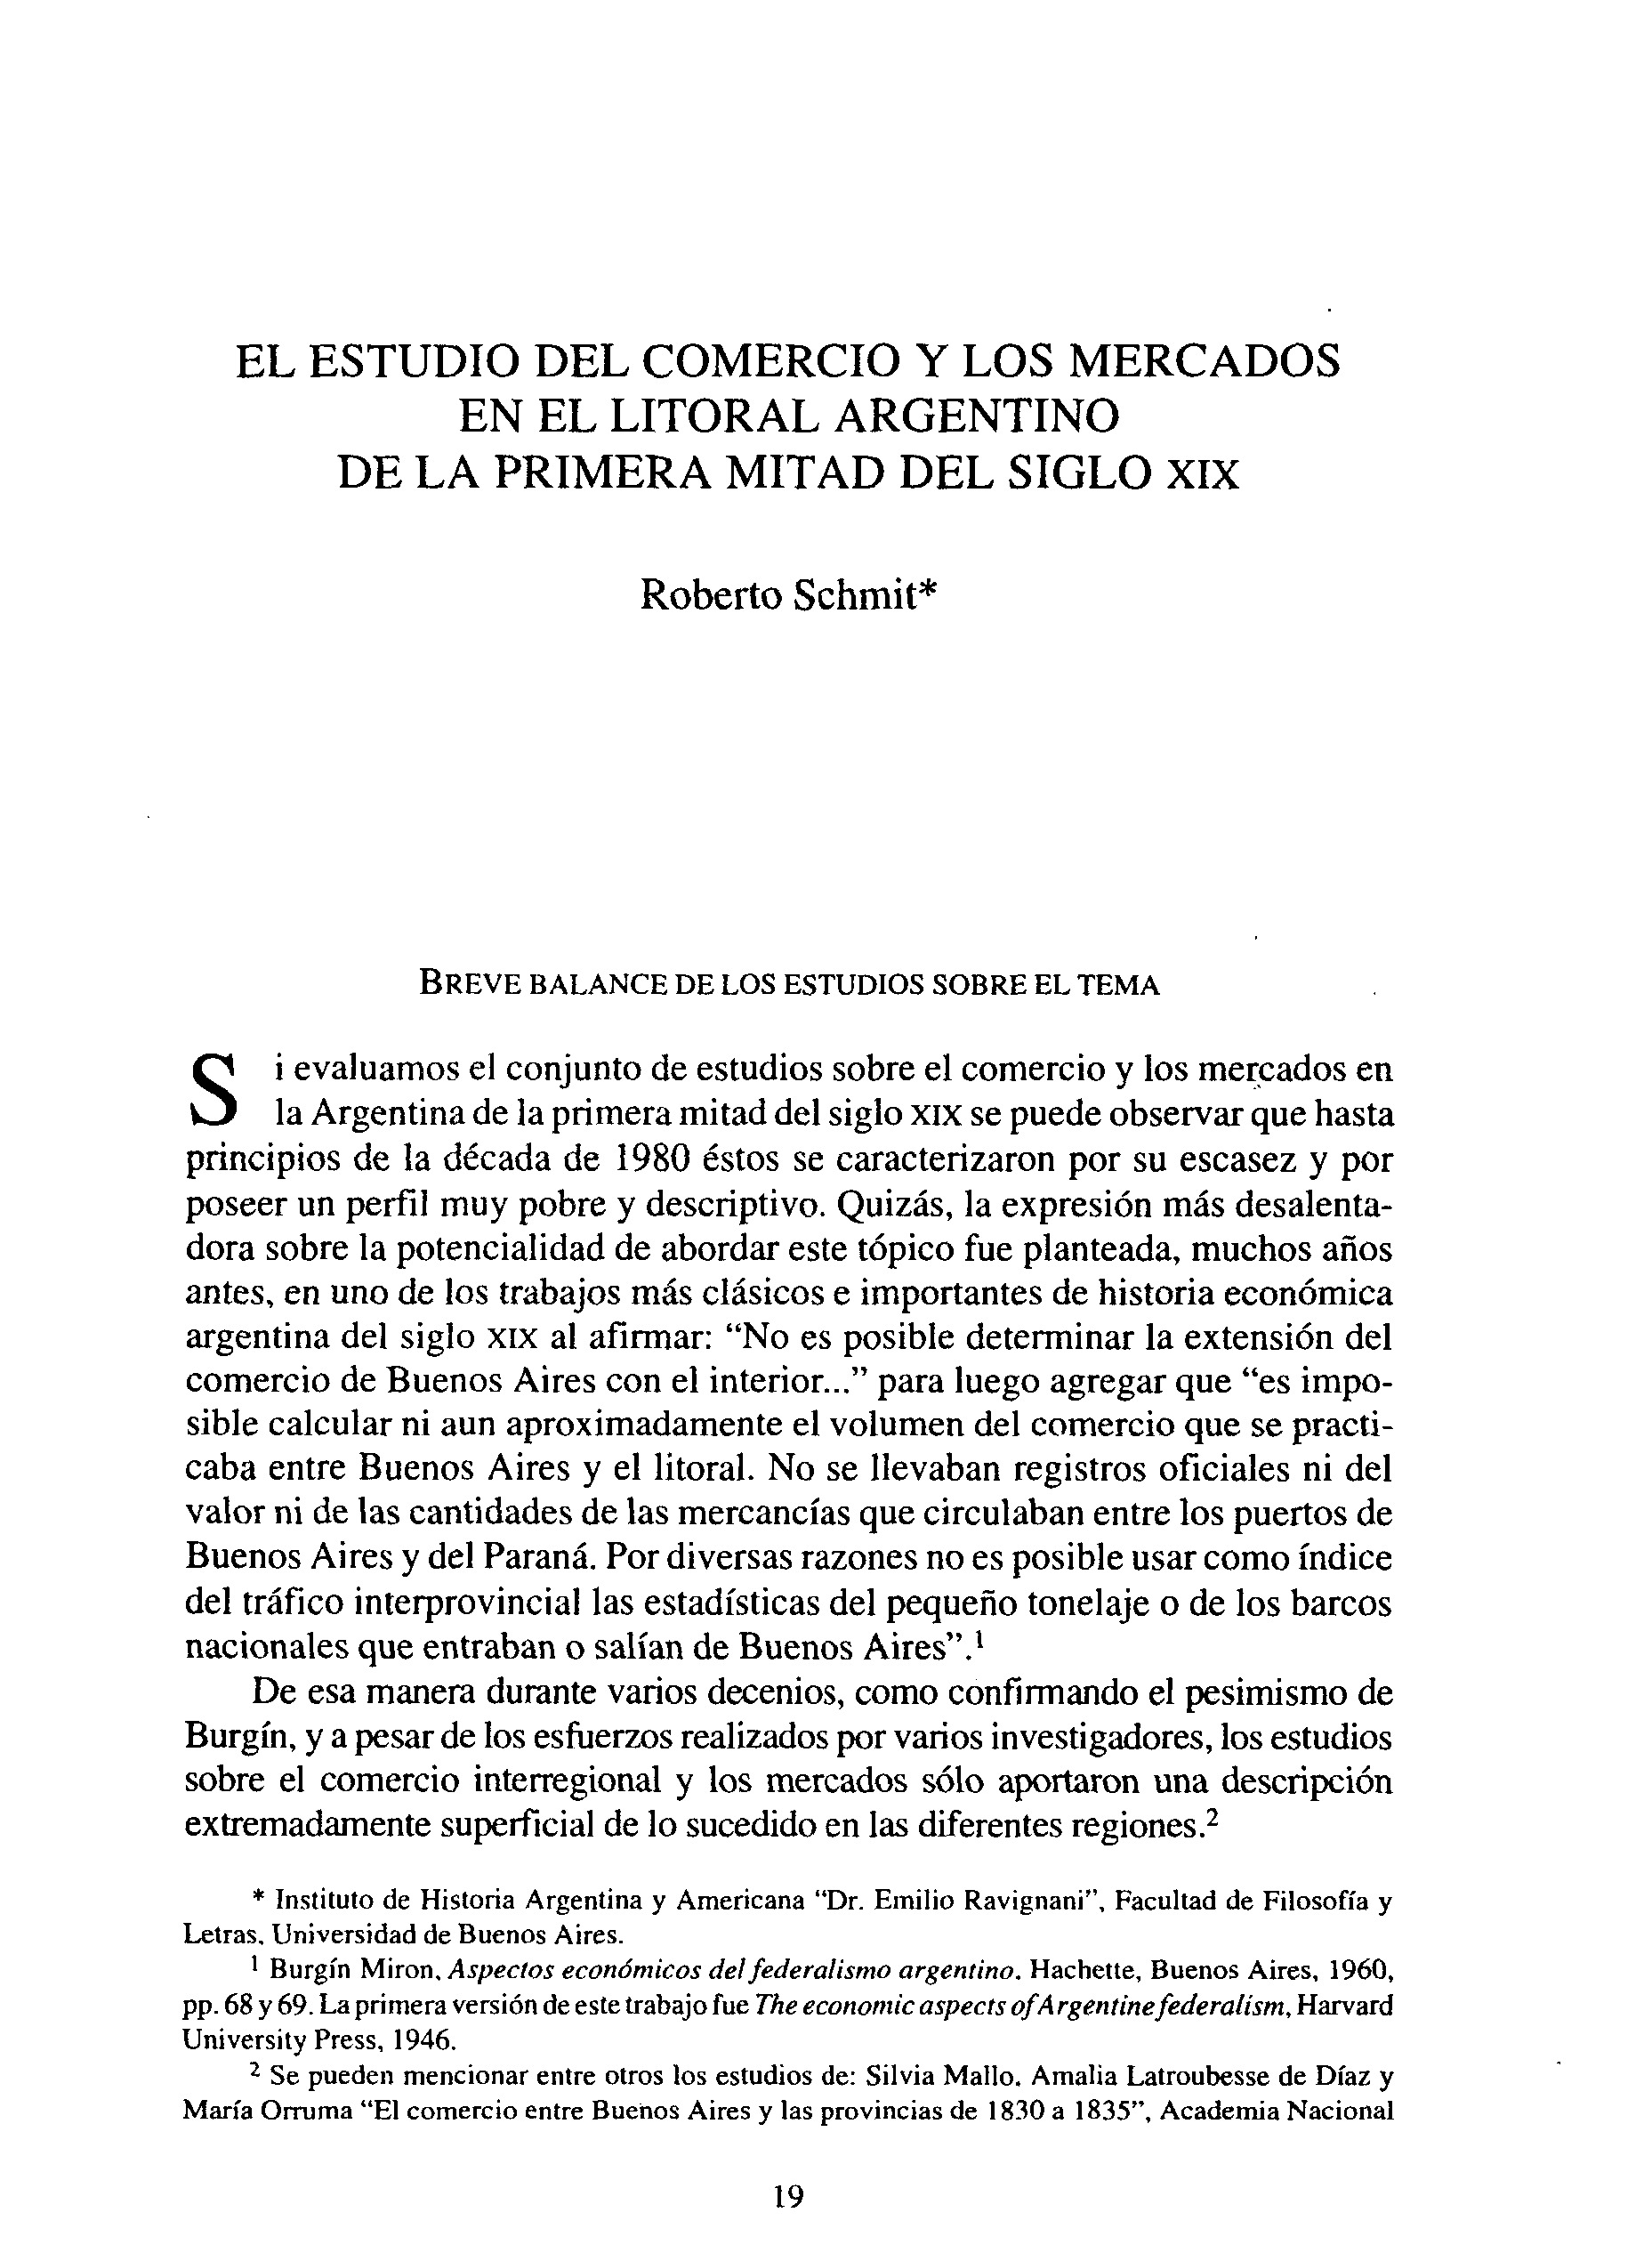 El estudio del comercio y los mercados en el litoral argentino de la primera mitad del siglo XIX